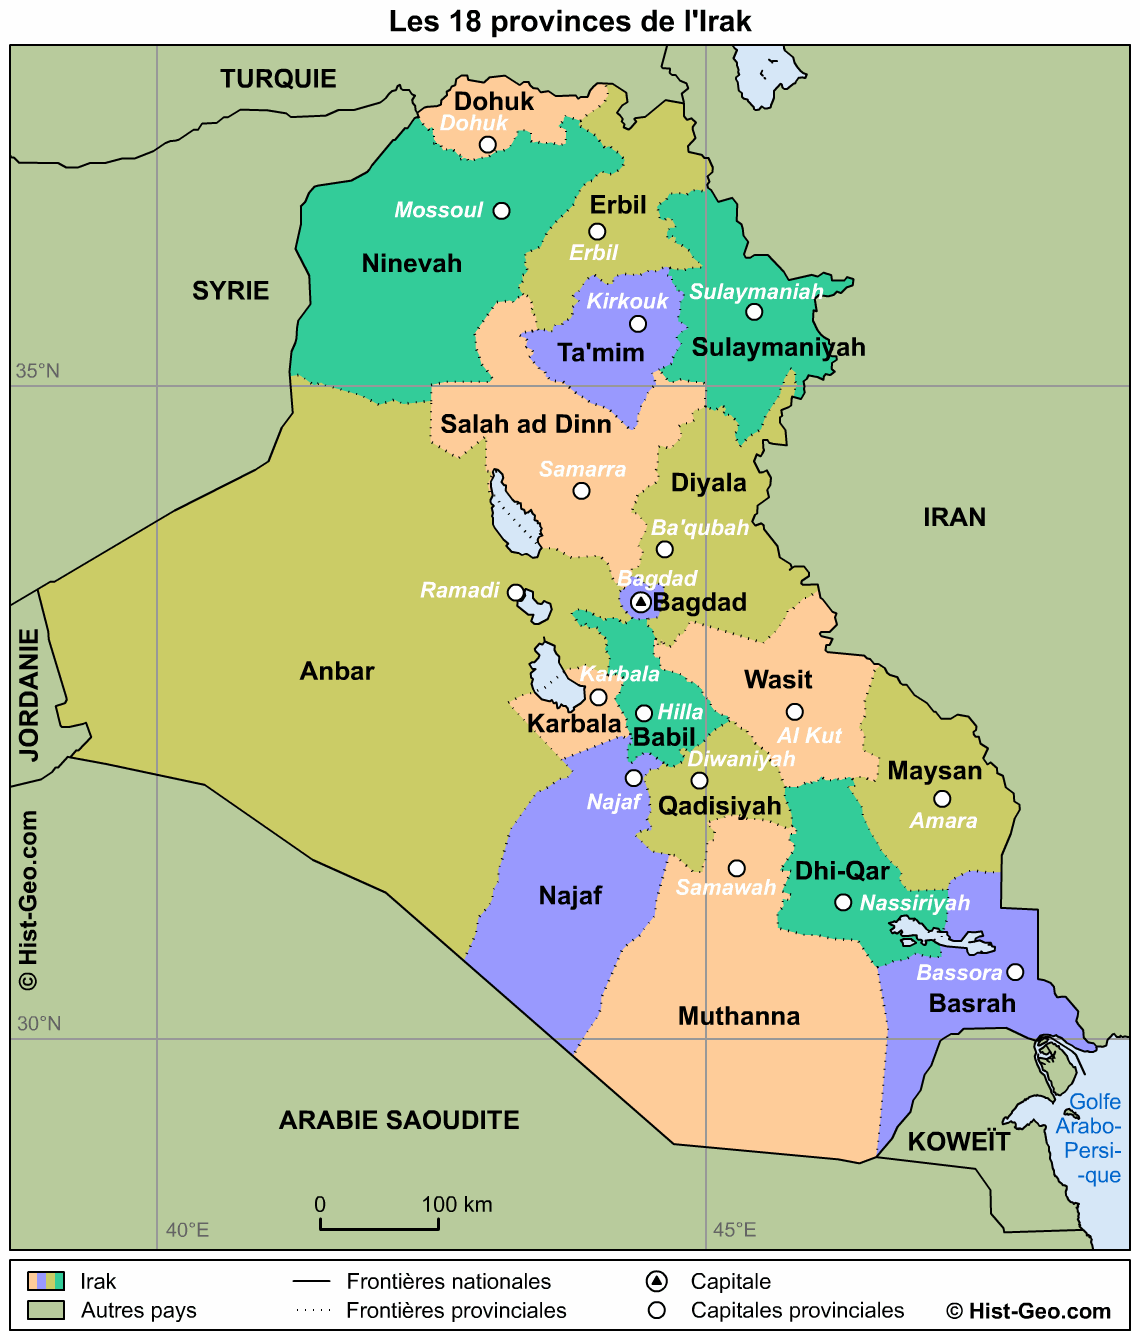 Les 18 provinces de l’Irak